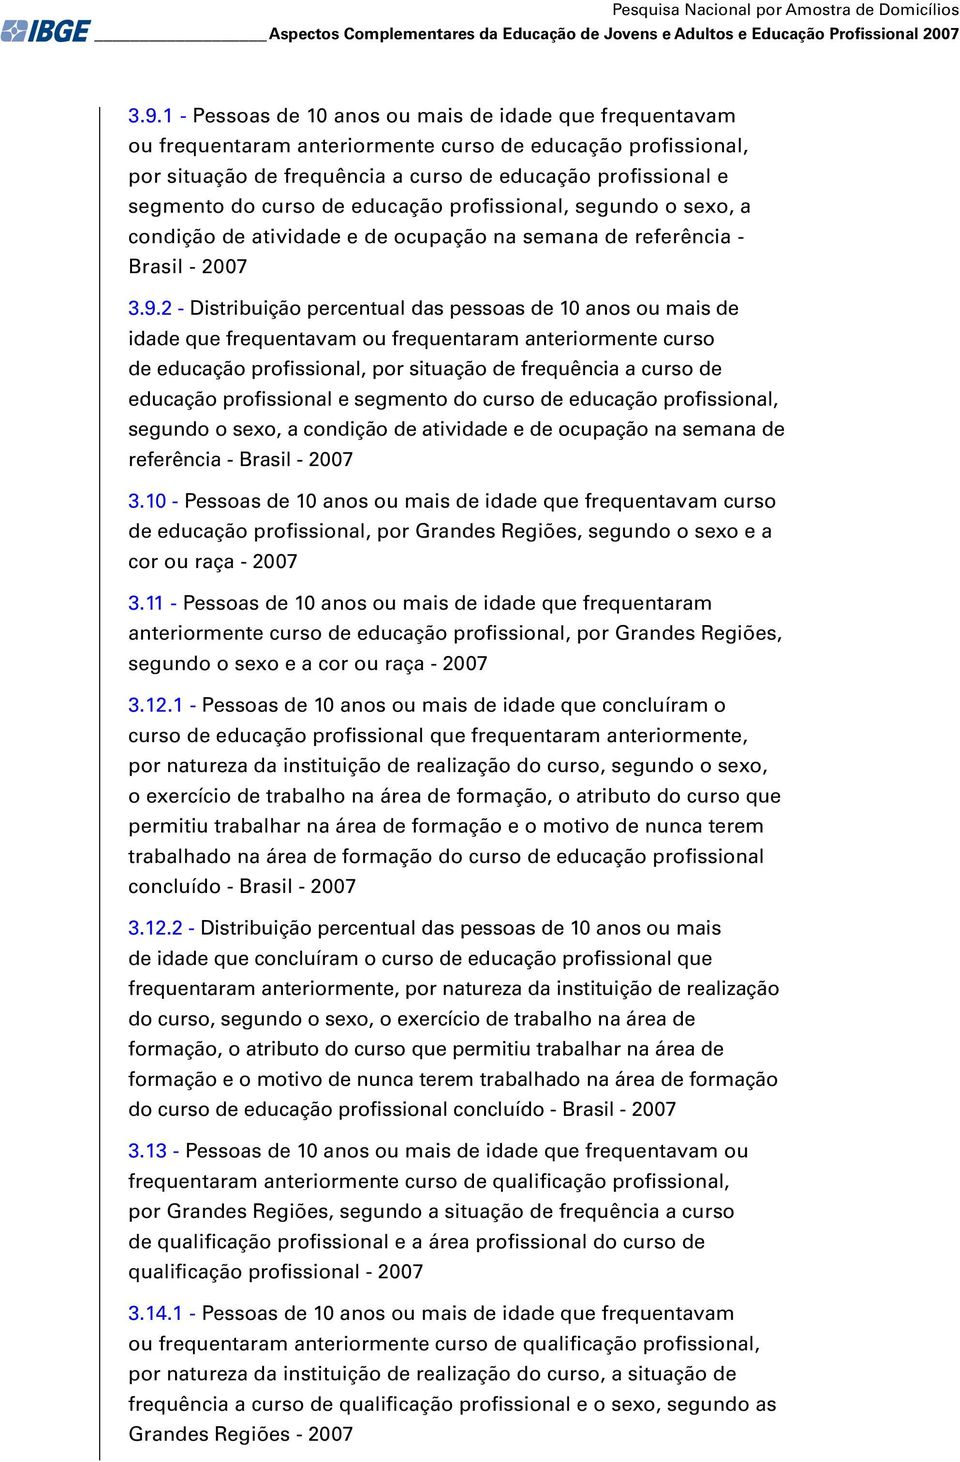 de educação profissional, segundo o sexo, a condição de atividade e de ocupação na semana de referência - Brasil - 2007 3.9.